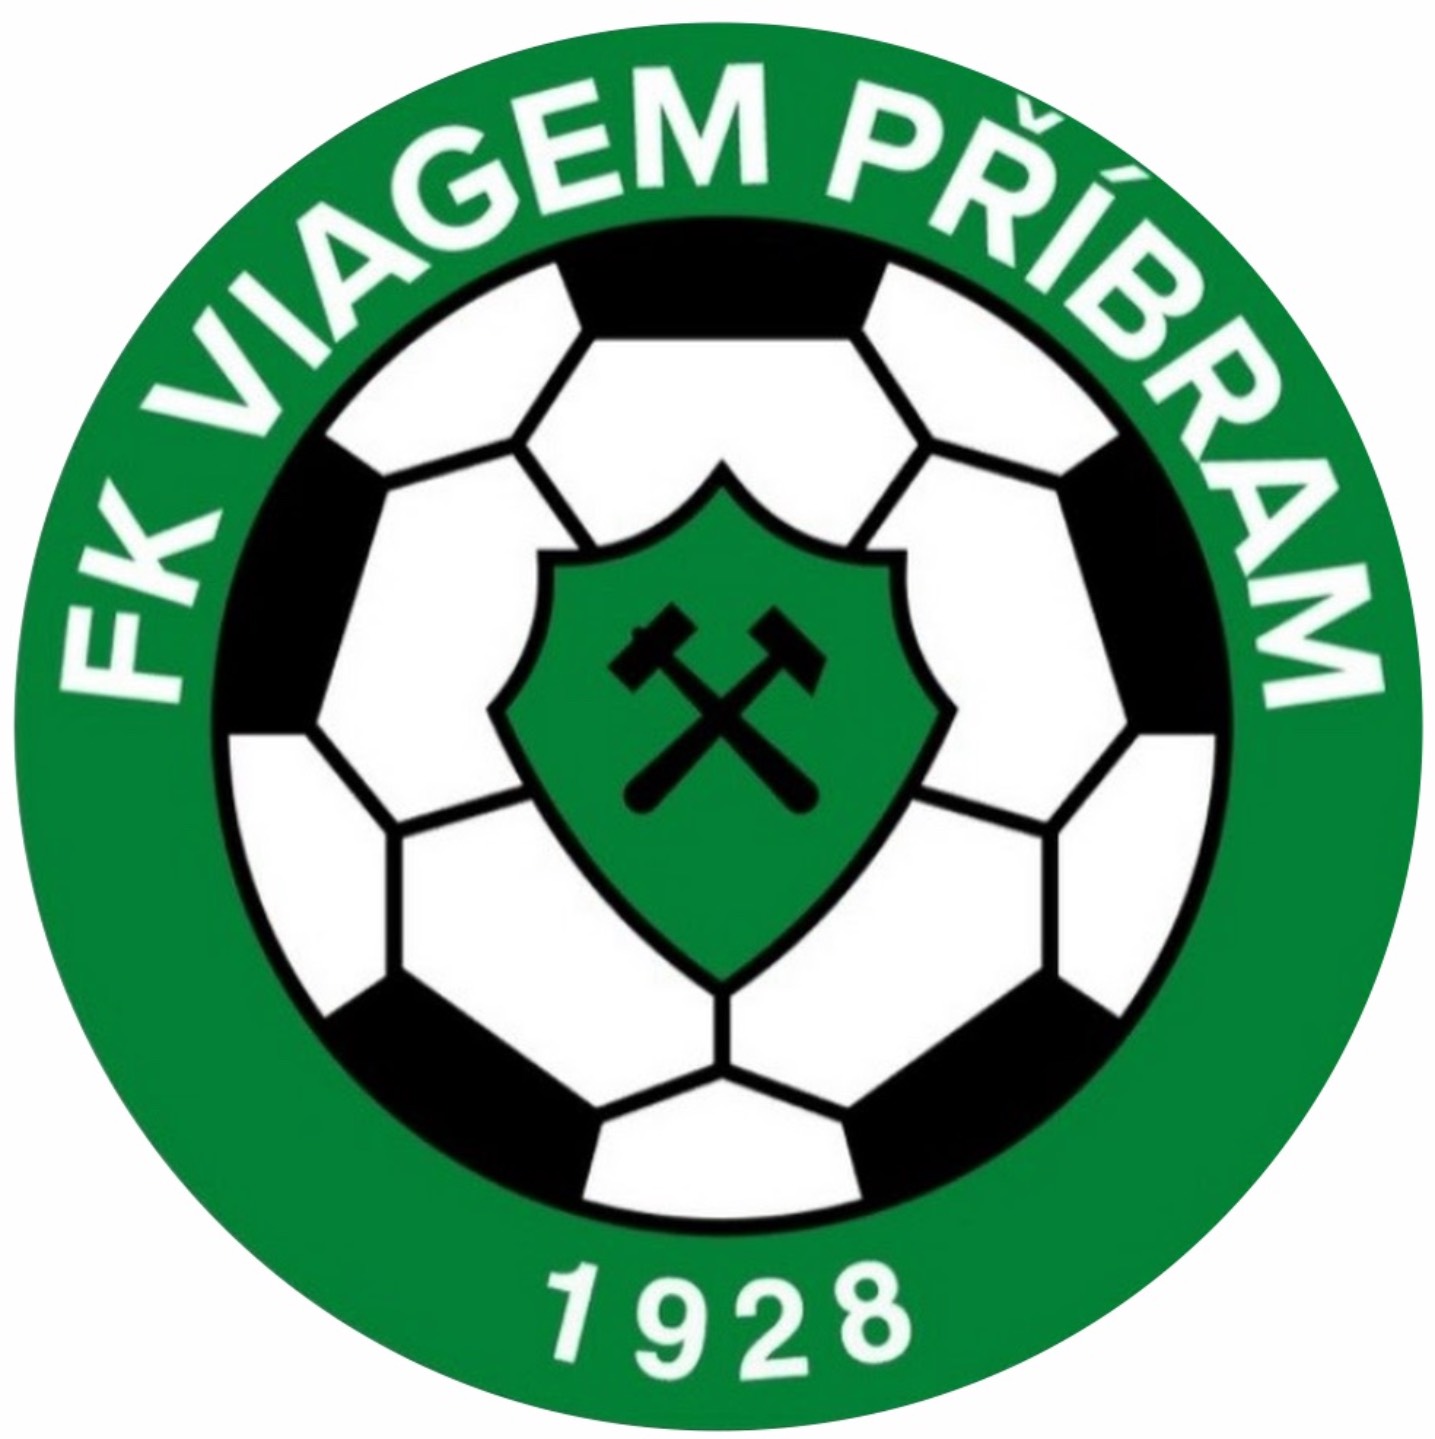 1.FK Příbram